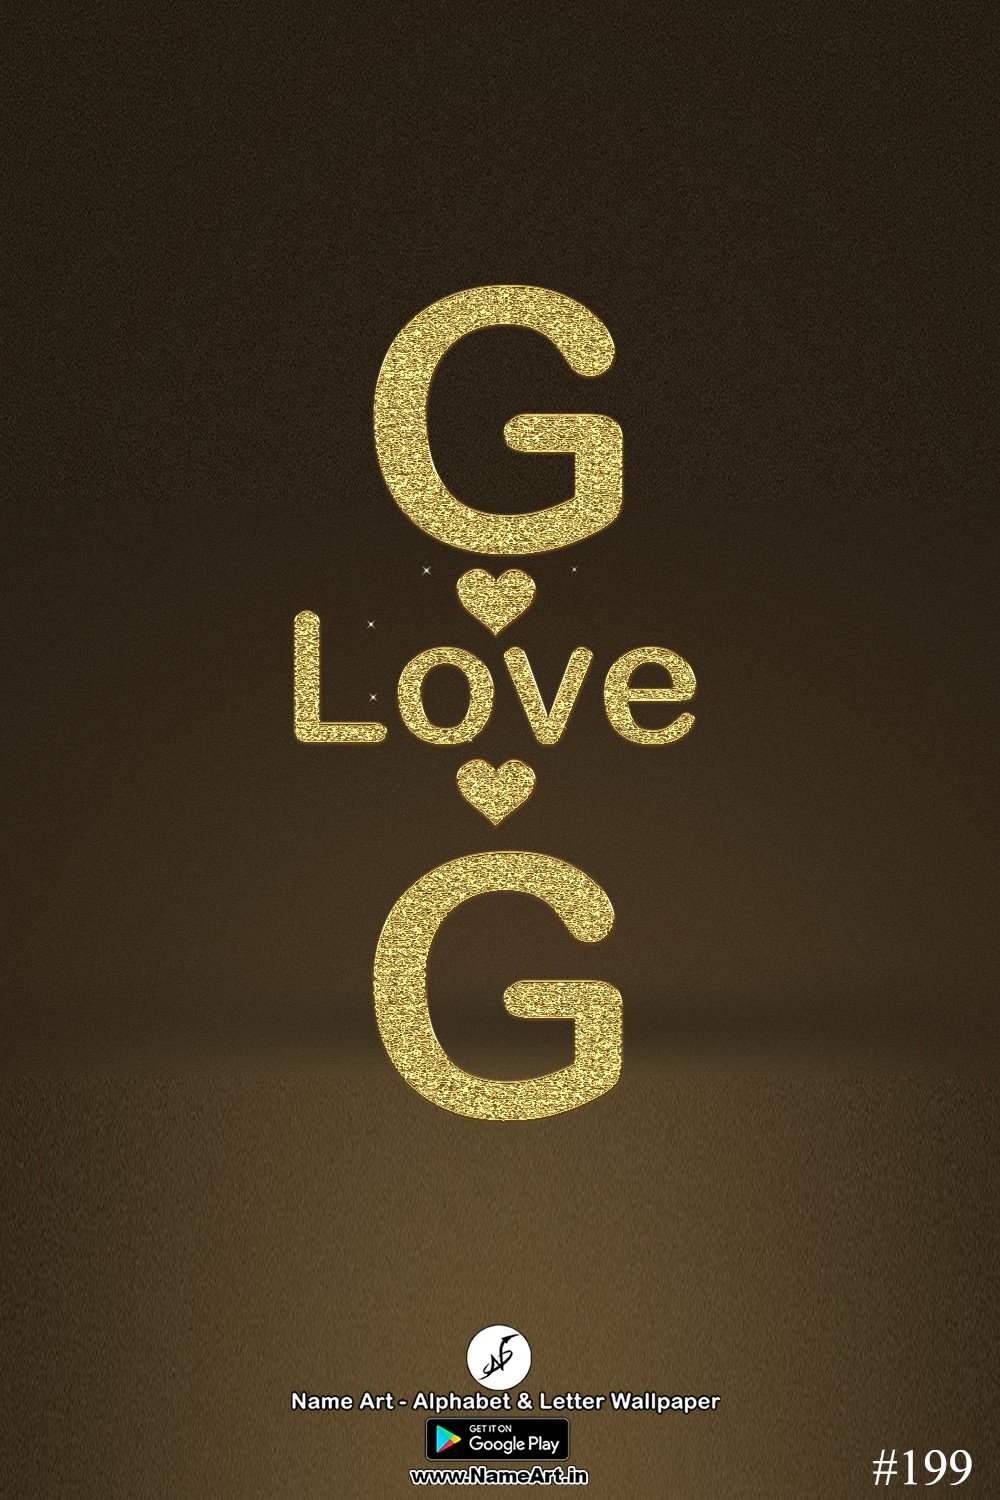 GG | Whatsapp Status DP GG | GG Golden Love Status Cute Couple Whatsapp Status DP !! | New Whatsapp Status DP GG Images |